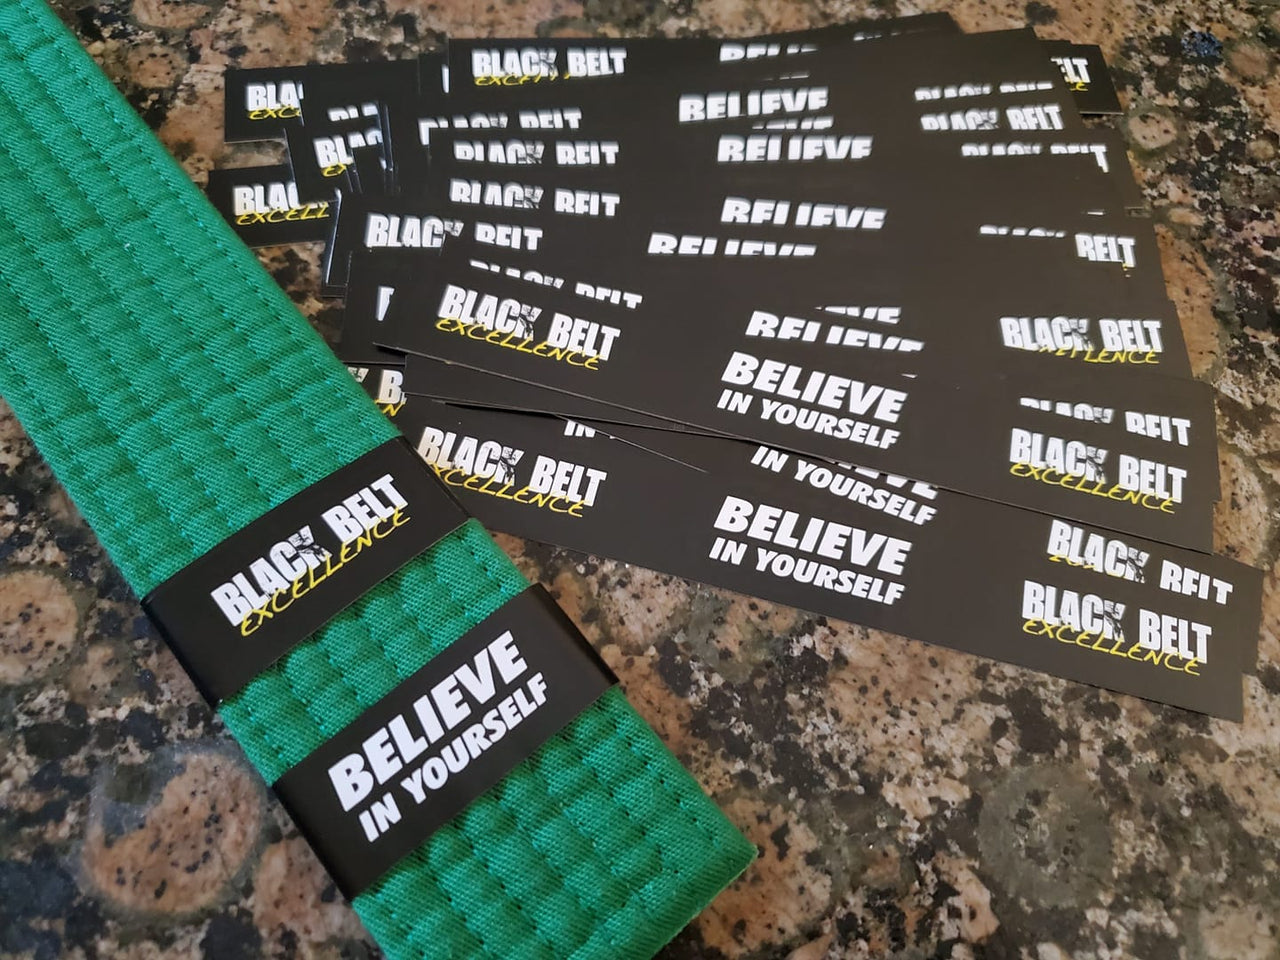 Black Belt Excellence Belt Stripes - Monthly - Get Students